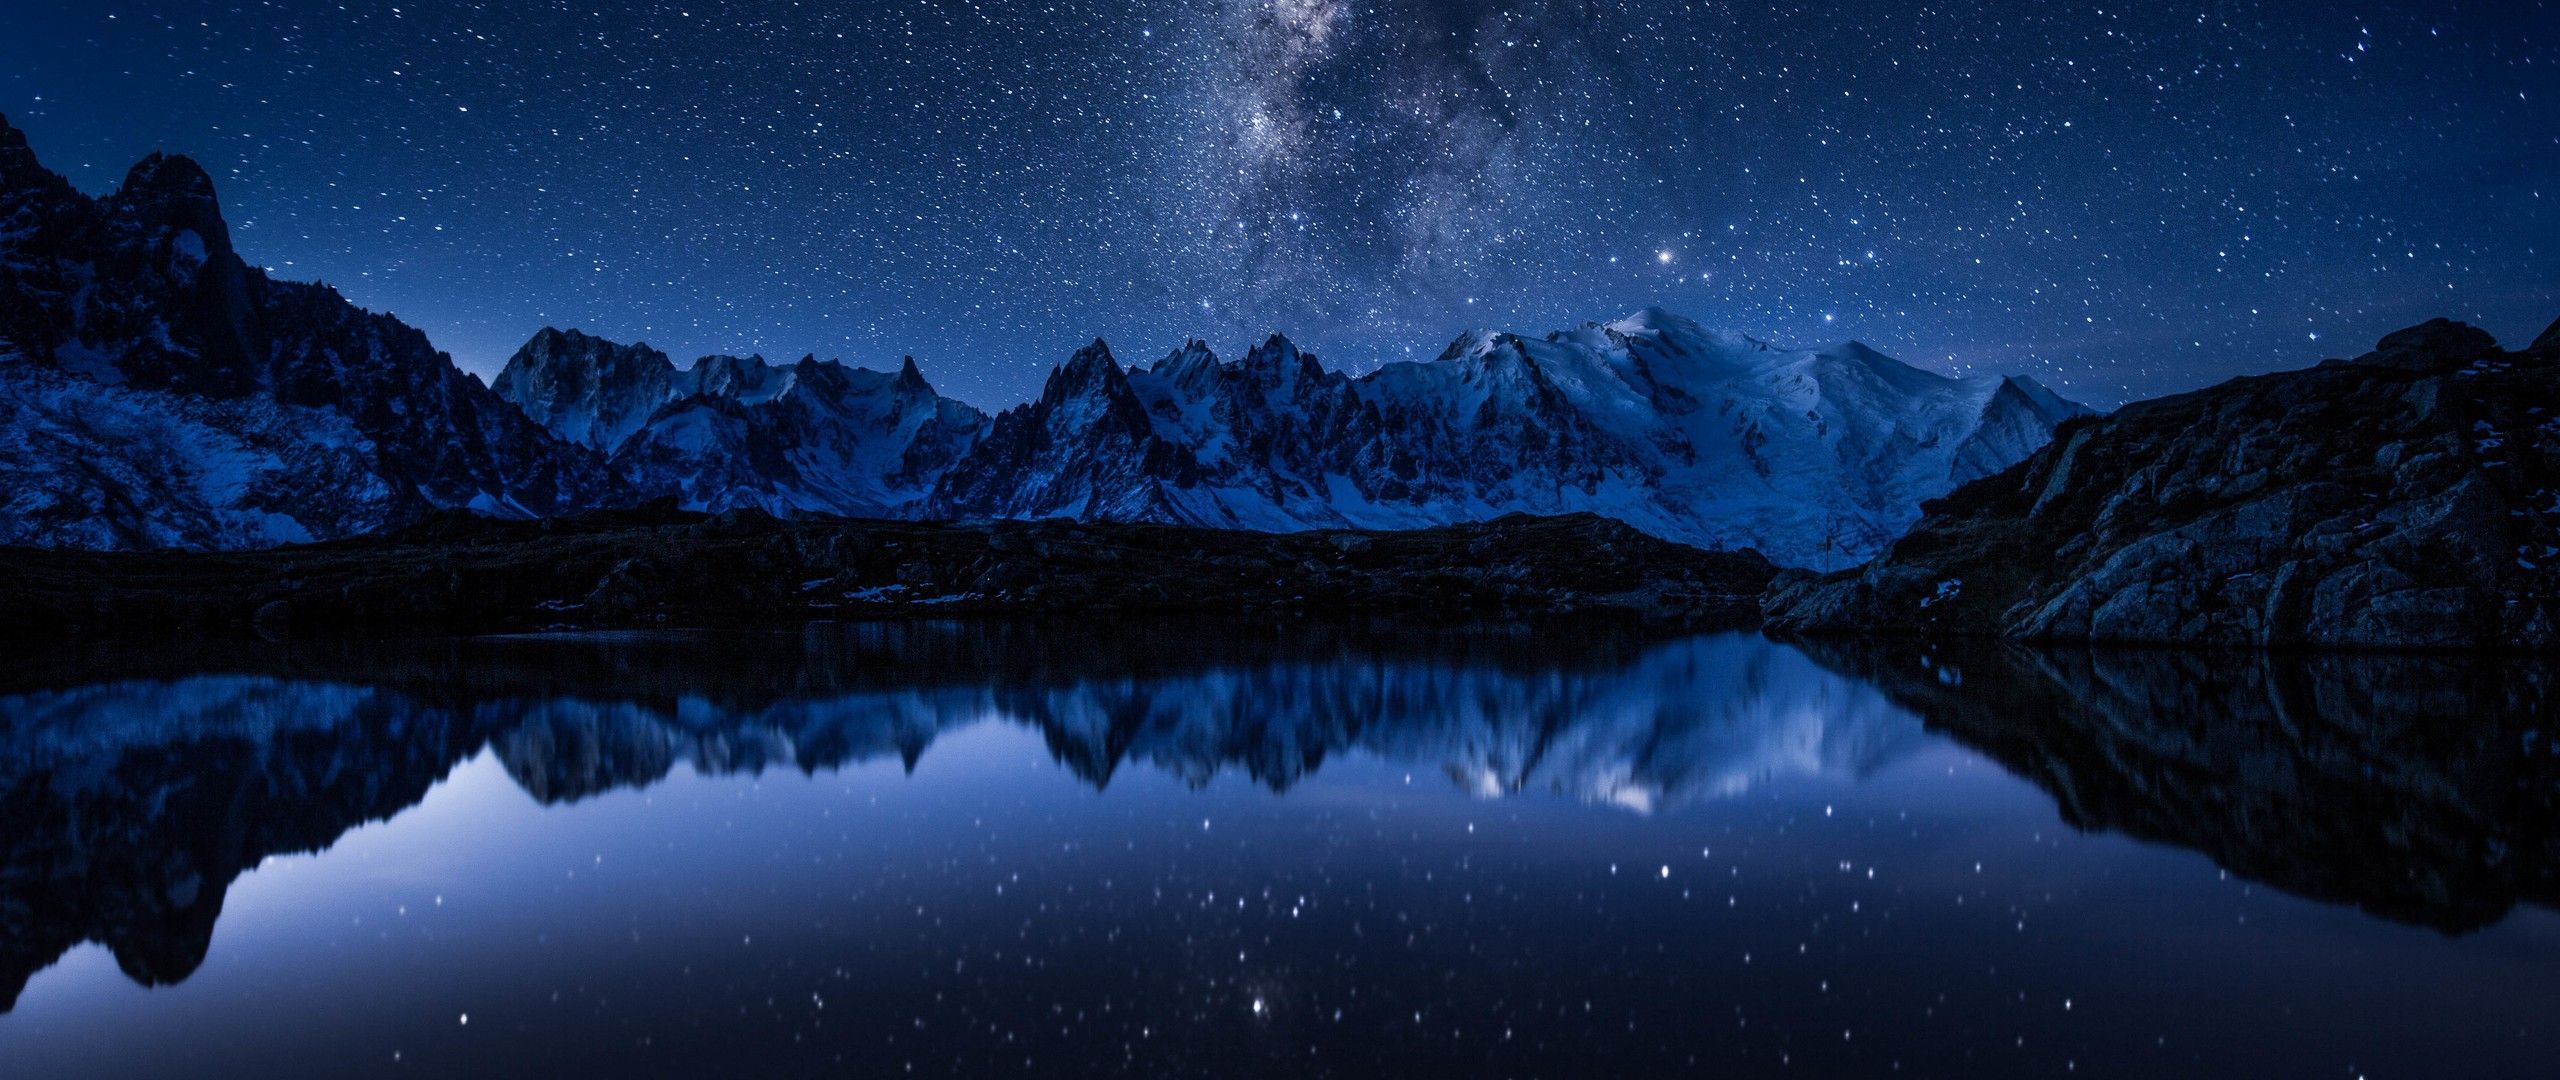  Berge Hintergrundbild 2560x1080. Kostenlose Hintergrundbilder Schneebedeckter Berg Tagsüber, Bilder Für Ihren Desktop Und Fotos